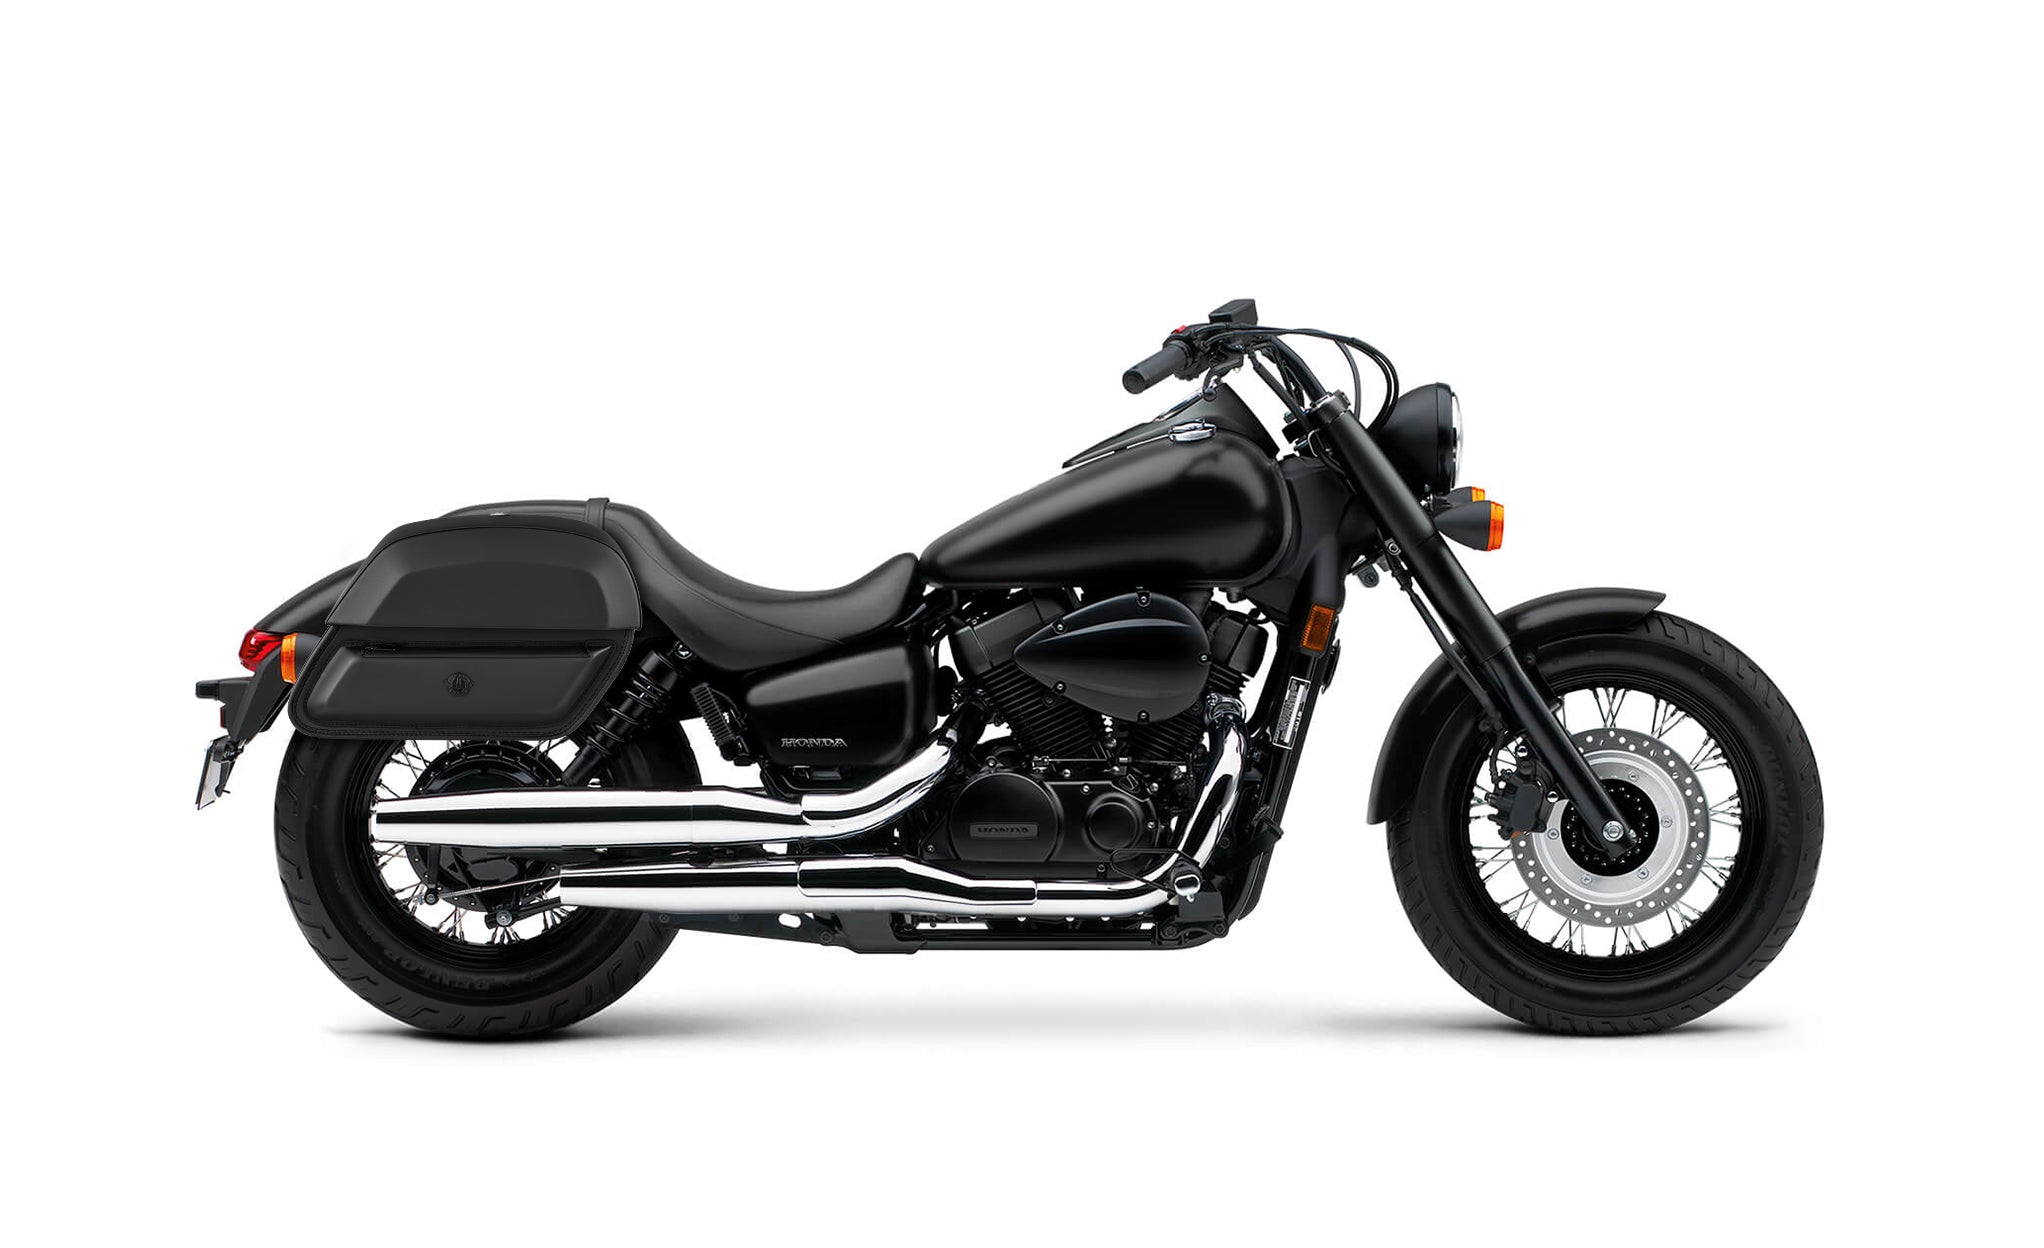 28L - Pantheon Medium Quick-Mount Honda 750 Shadow Phantom Motorcycle Saddlebags @expand